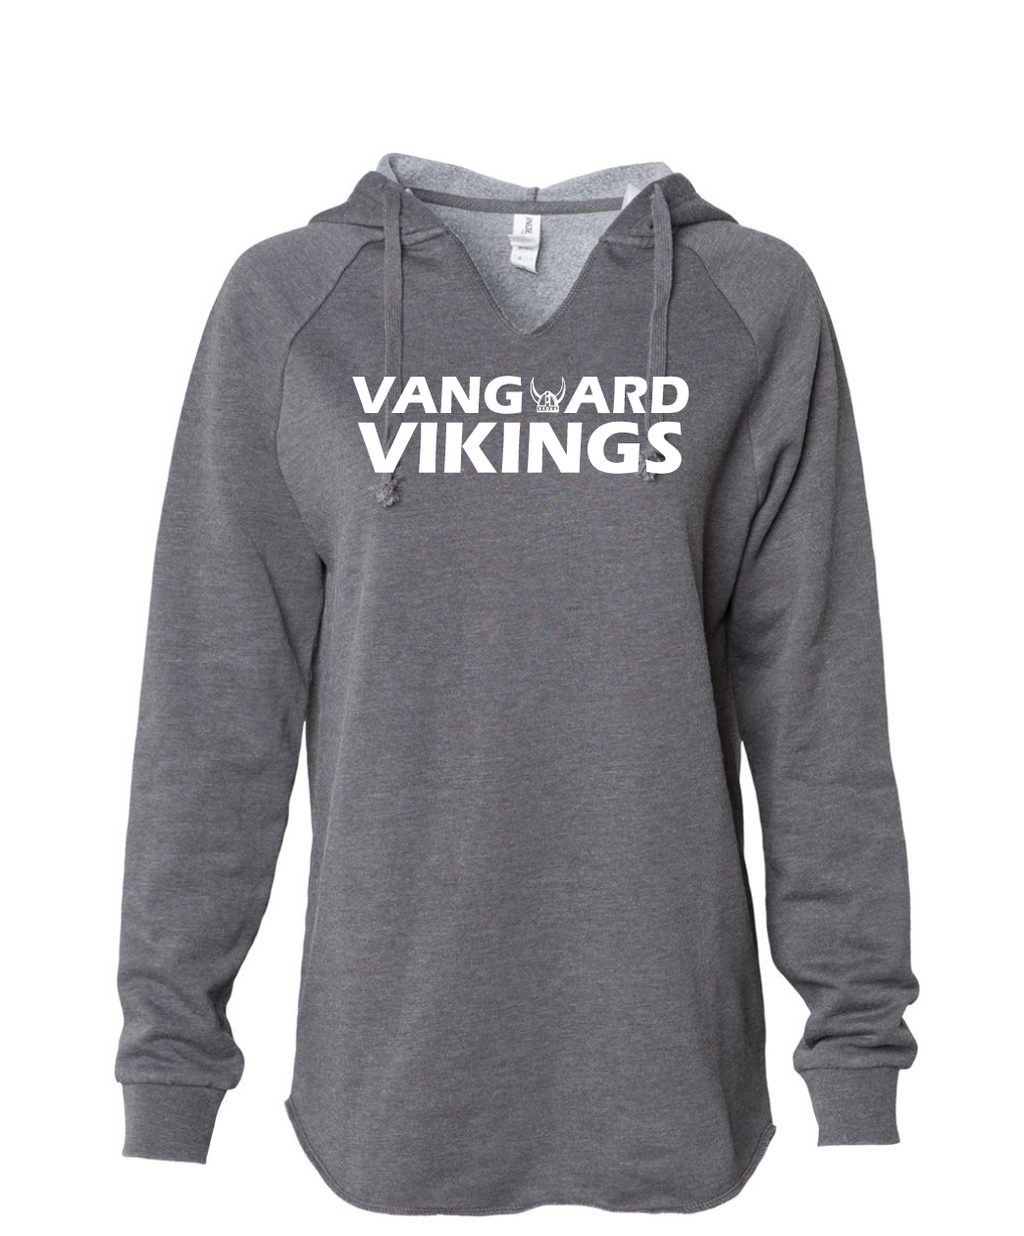 Vanguard - Women's Lightweight Hooded Pullover Sweatshirt